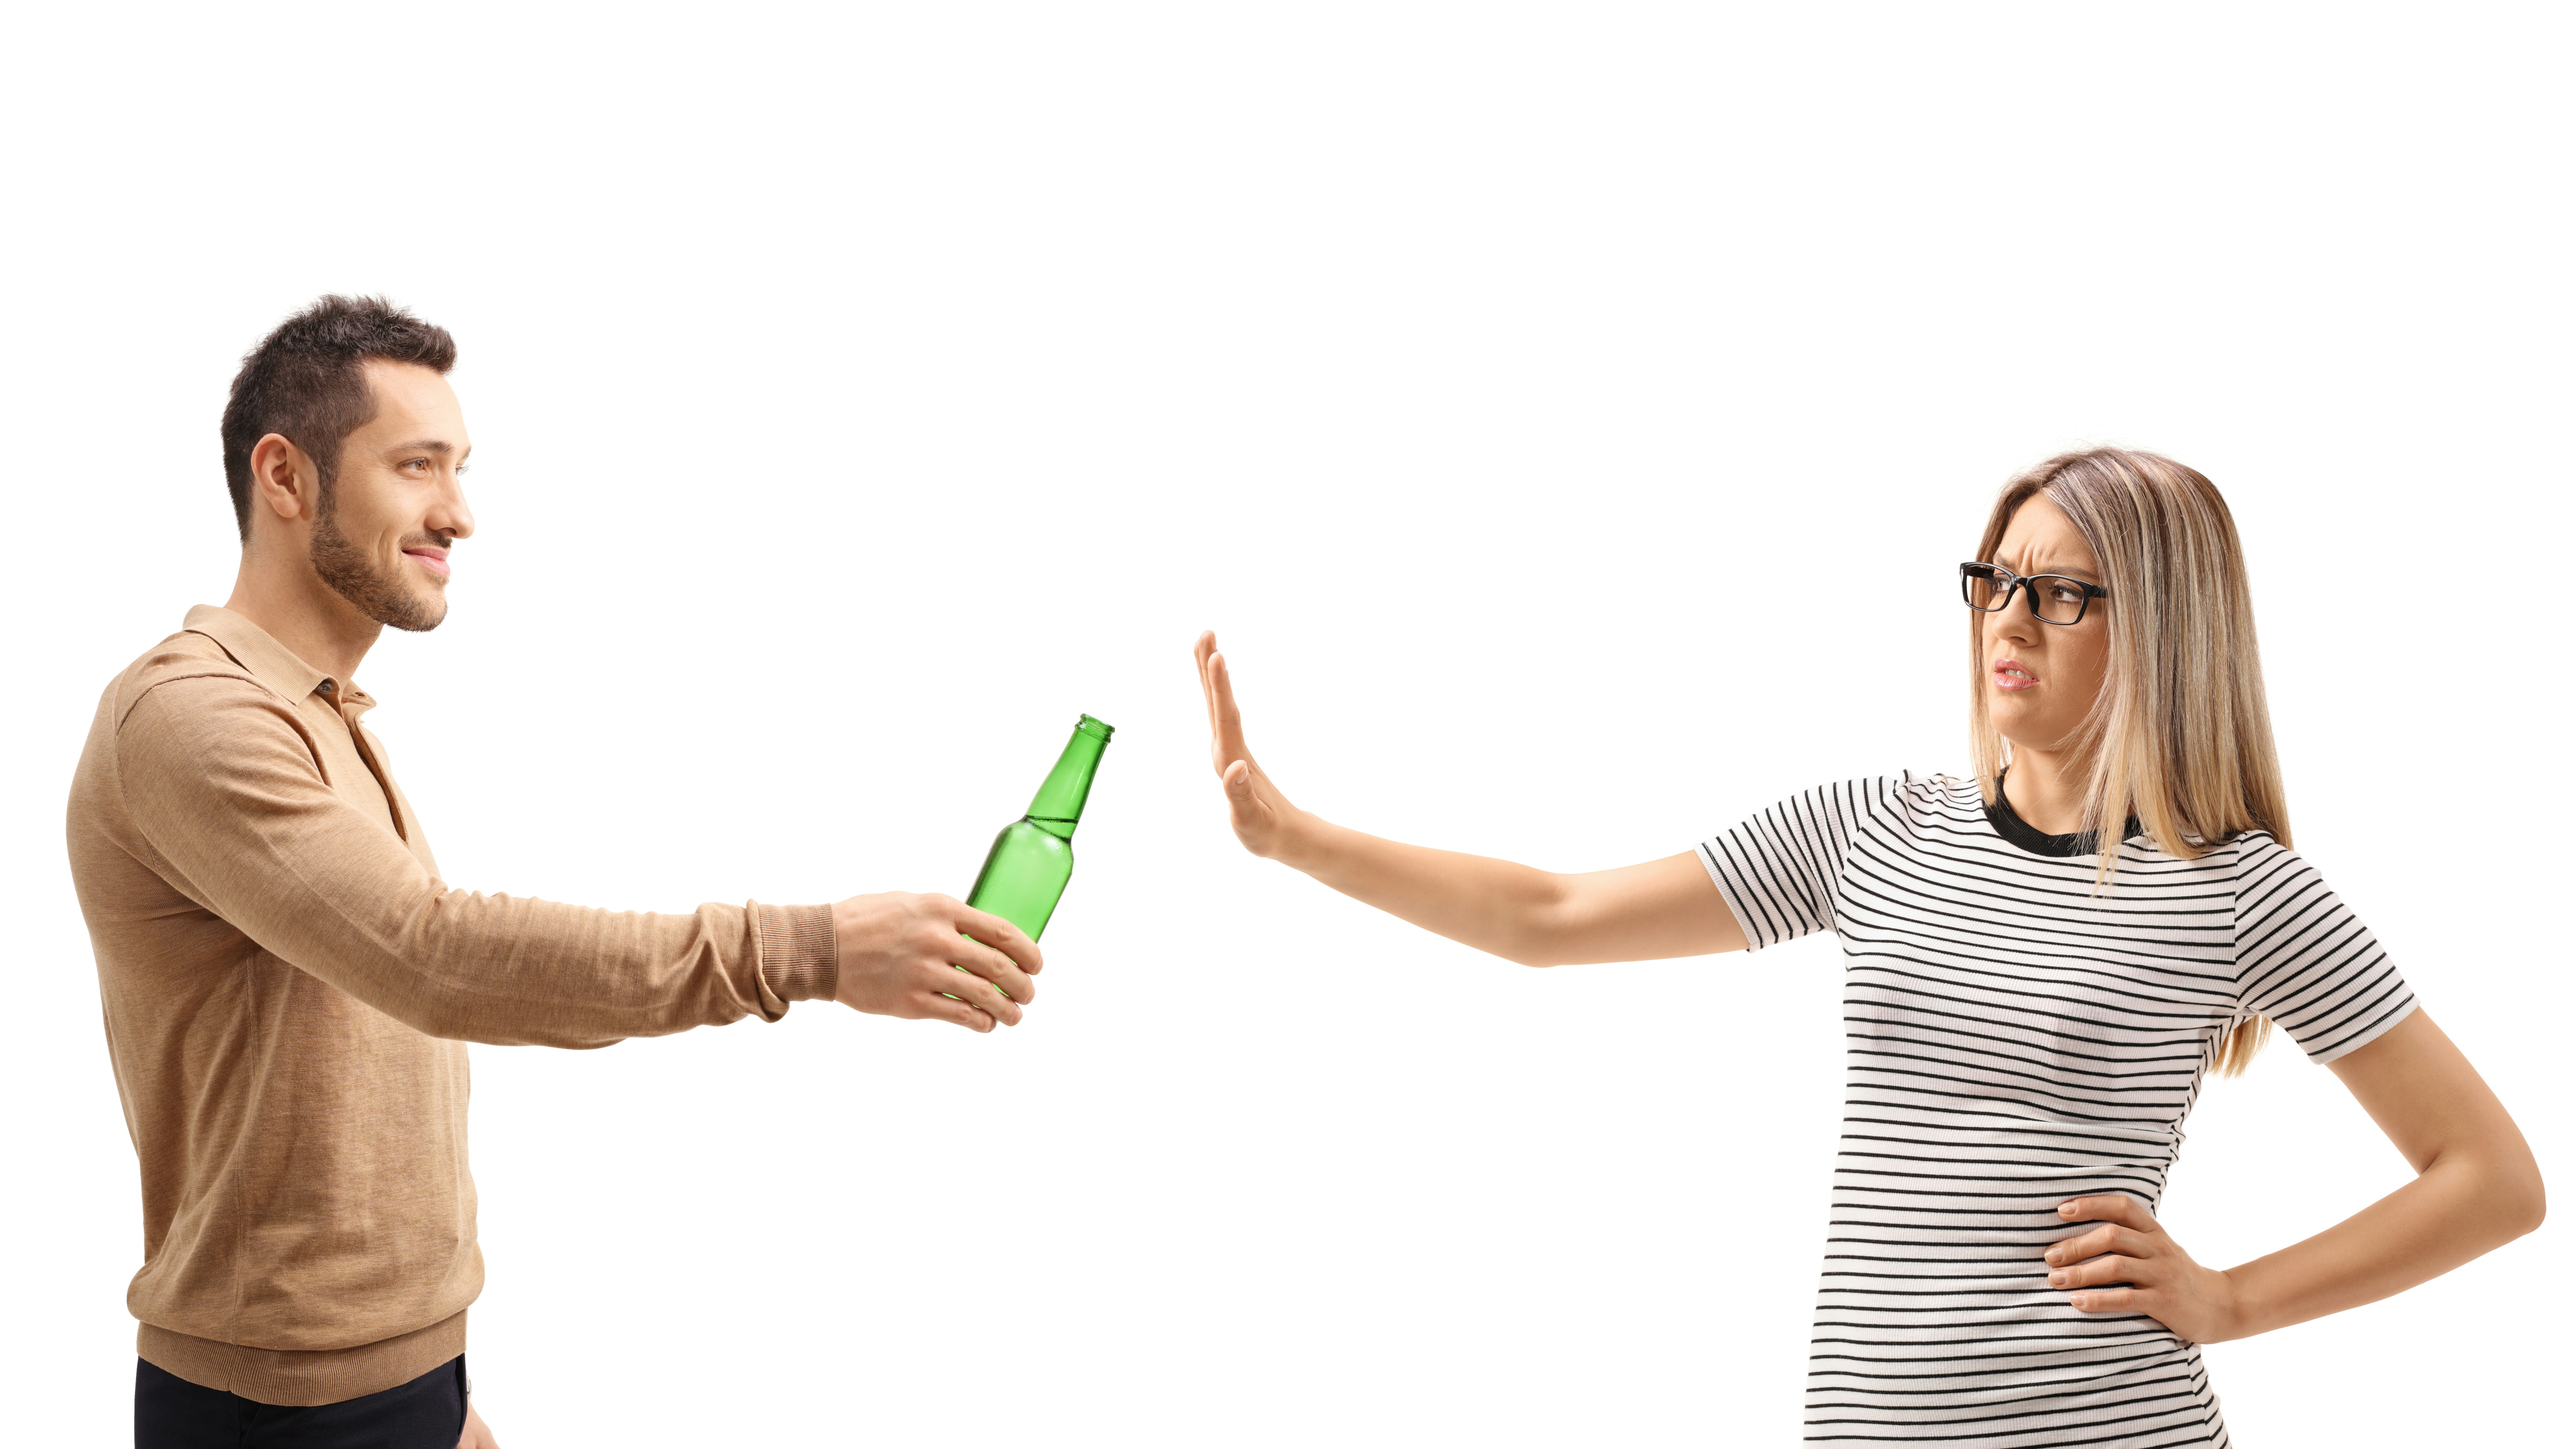 En mand holder en ølflaske frem med en kvinde